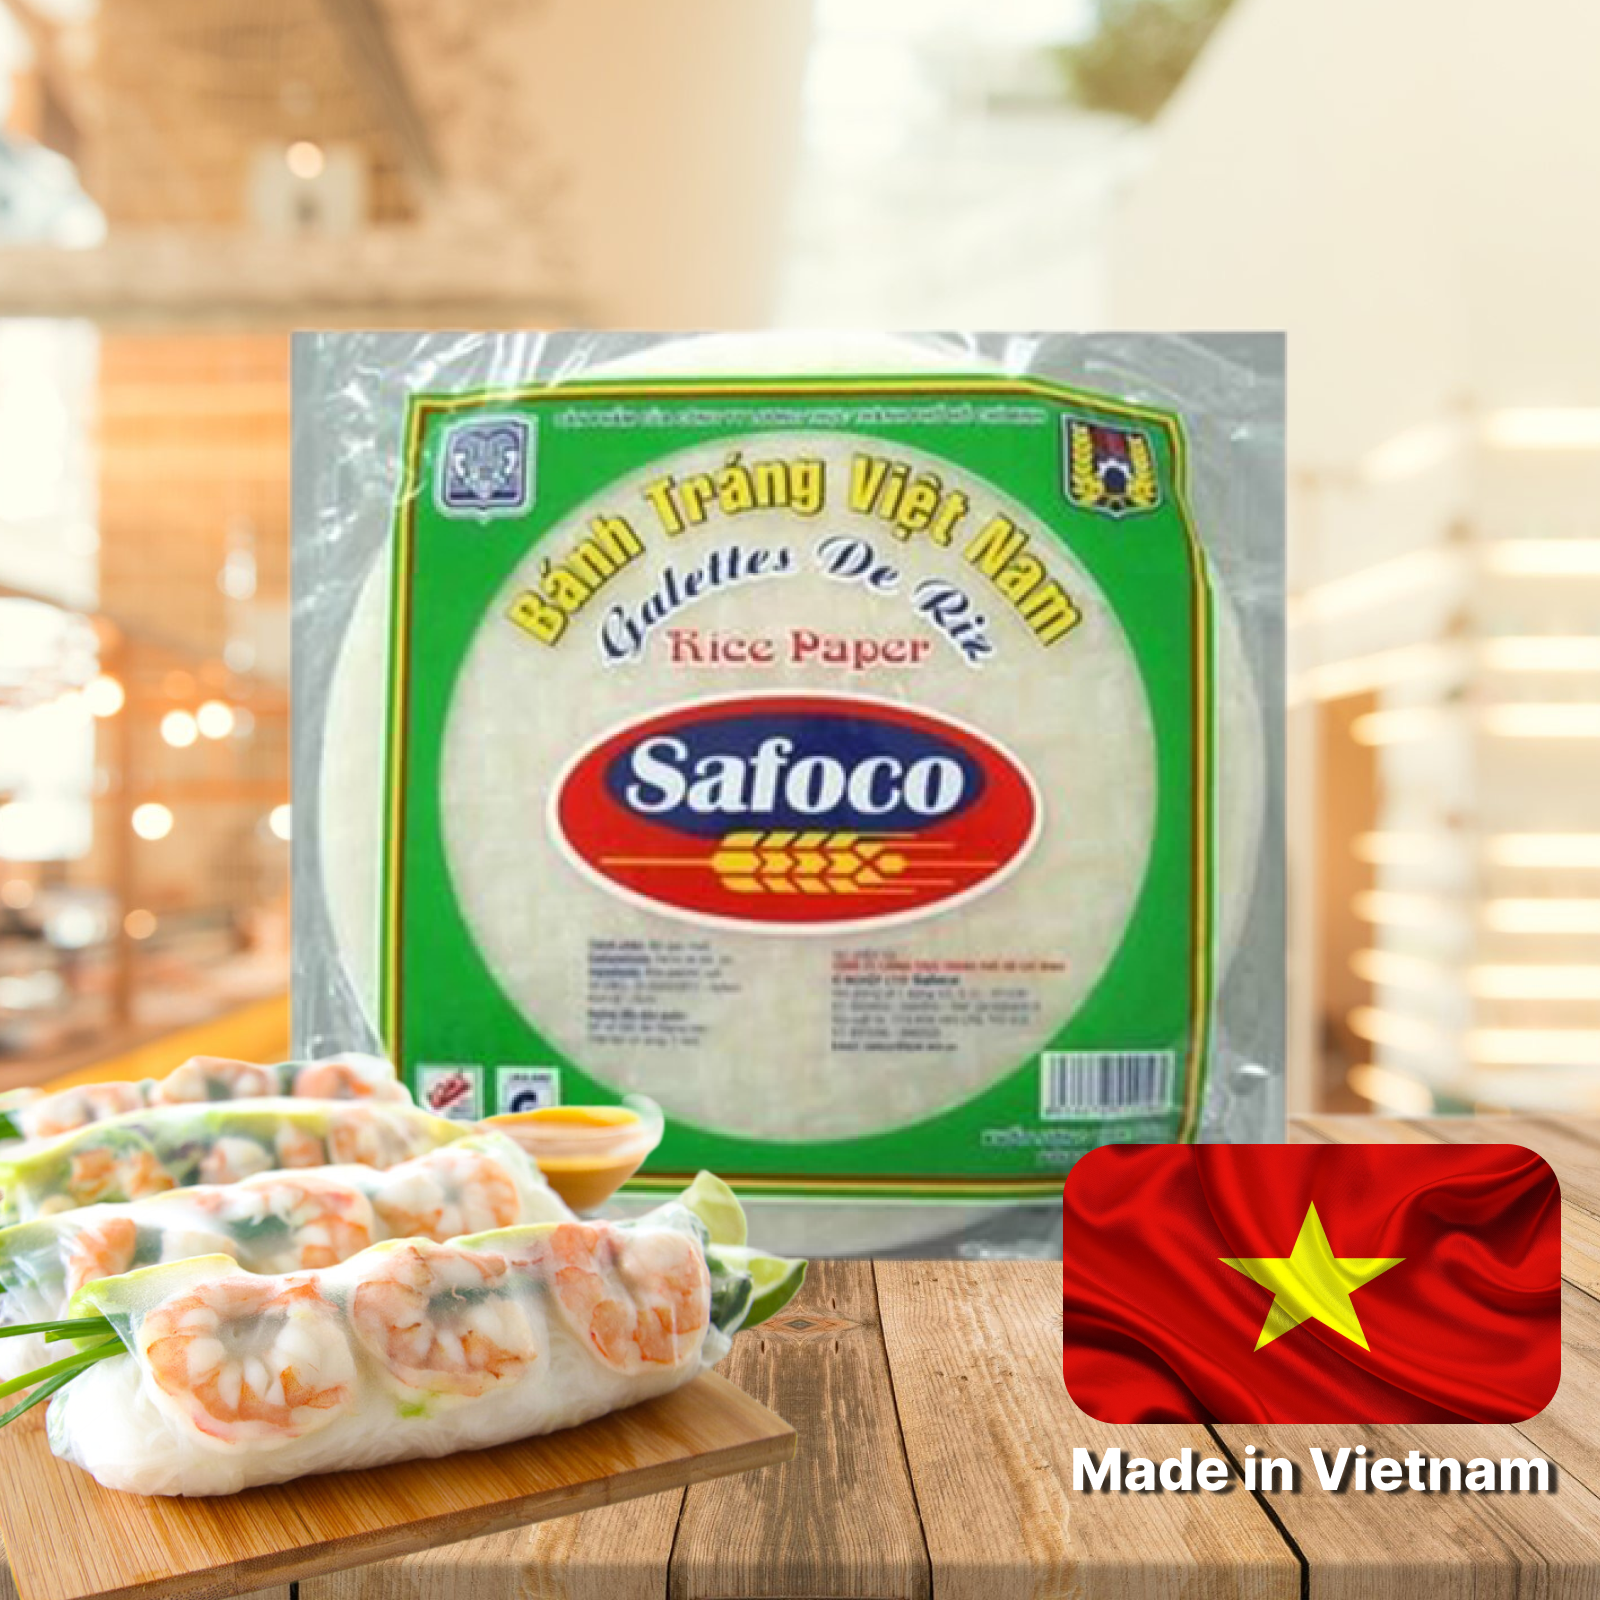 Рисовая бумага для приготовления спринг роллов Safoco (22 см, 300 г), Вьетнам